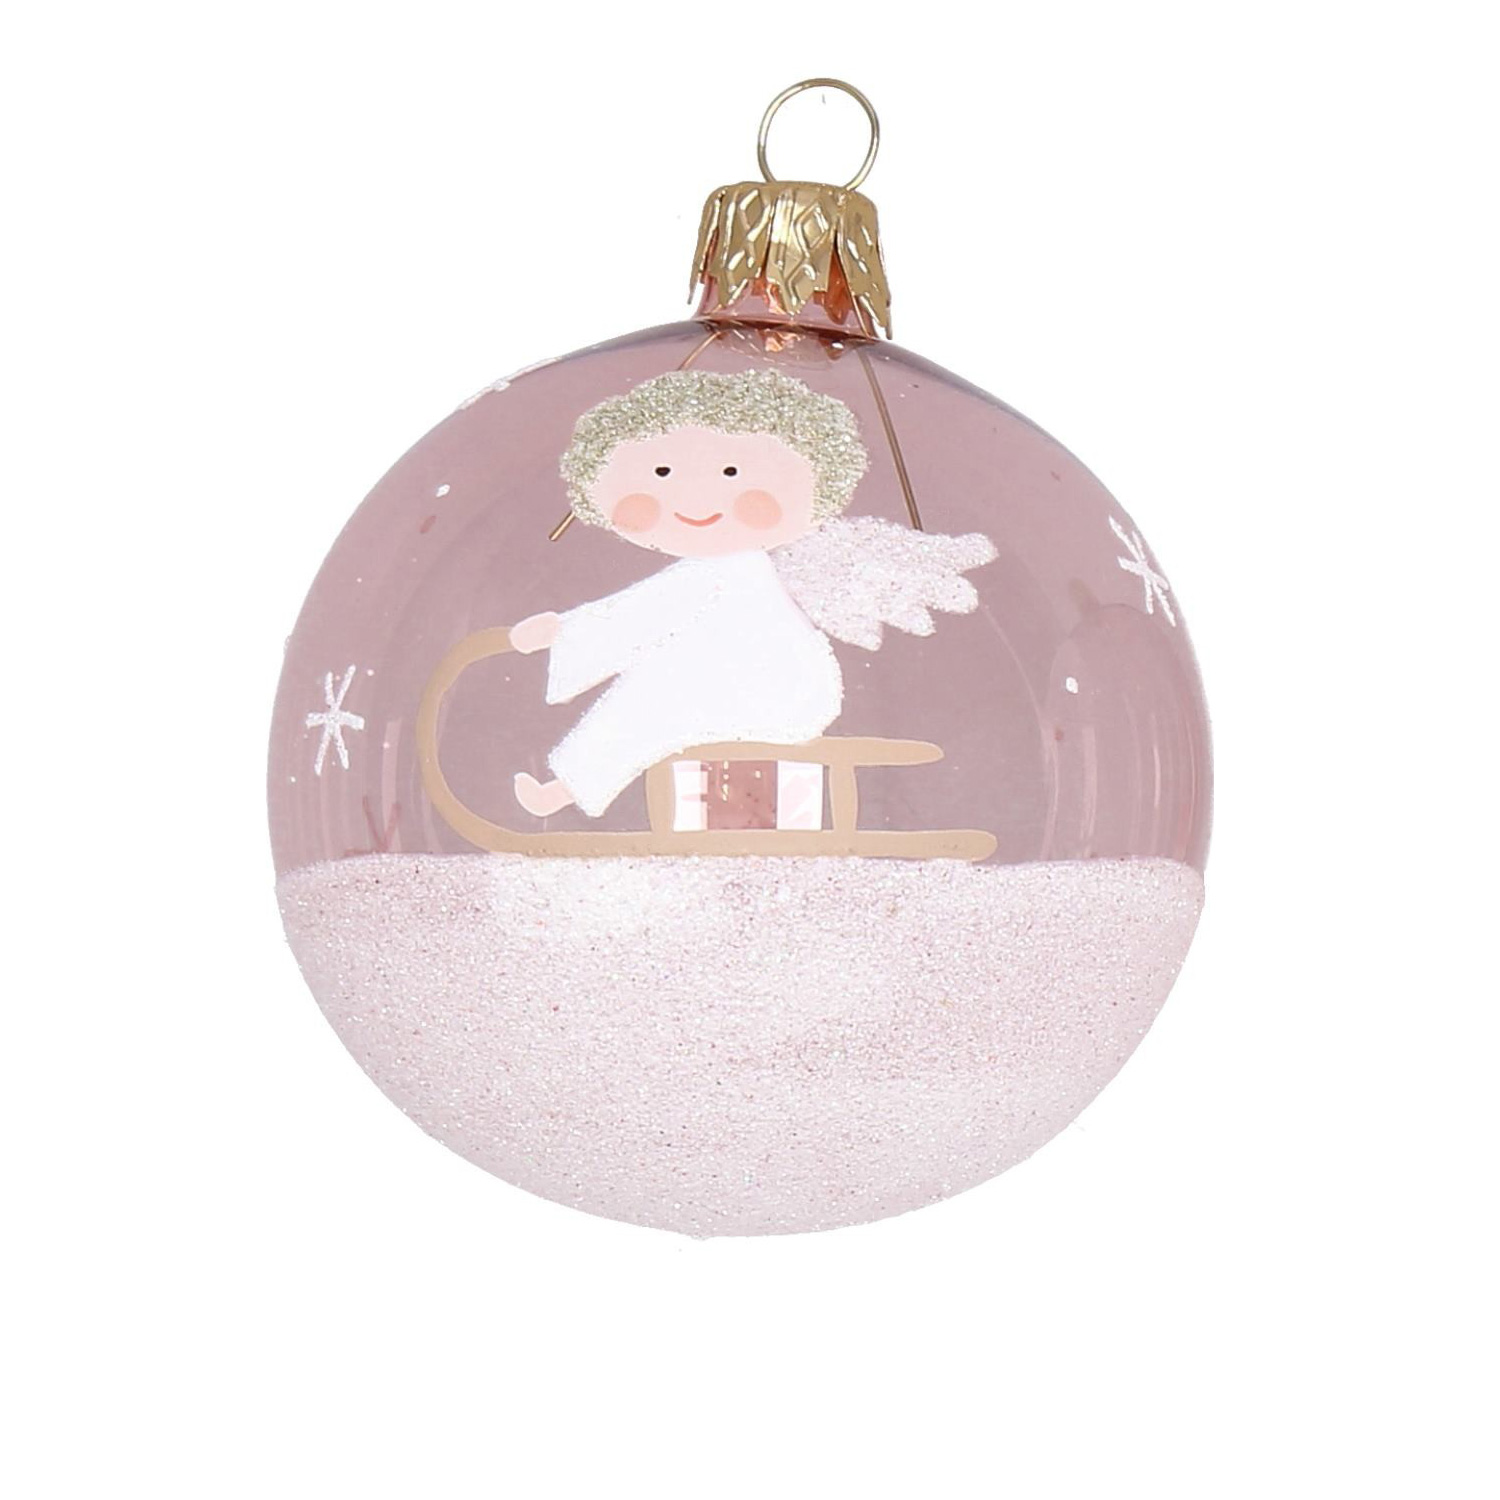 Weihnachtskugel "Engel" rosa-weiß-Glitzer, D. ca. 8 cm, handbemalt, klar rosa